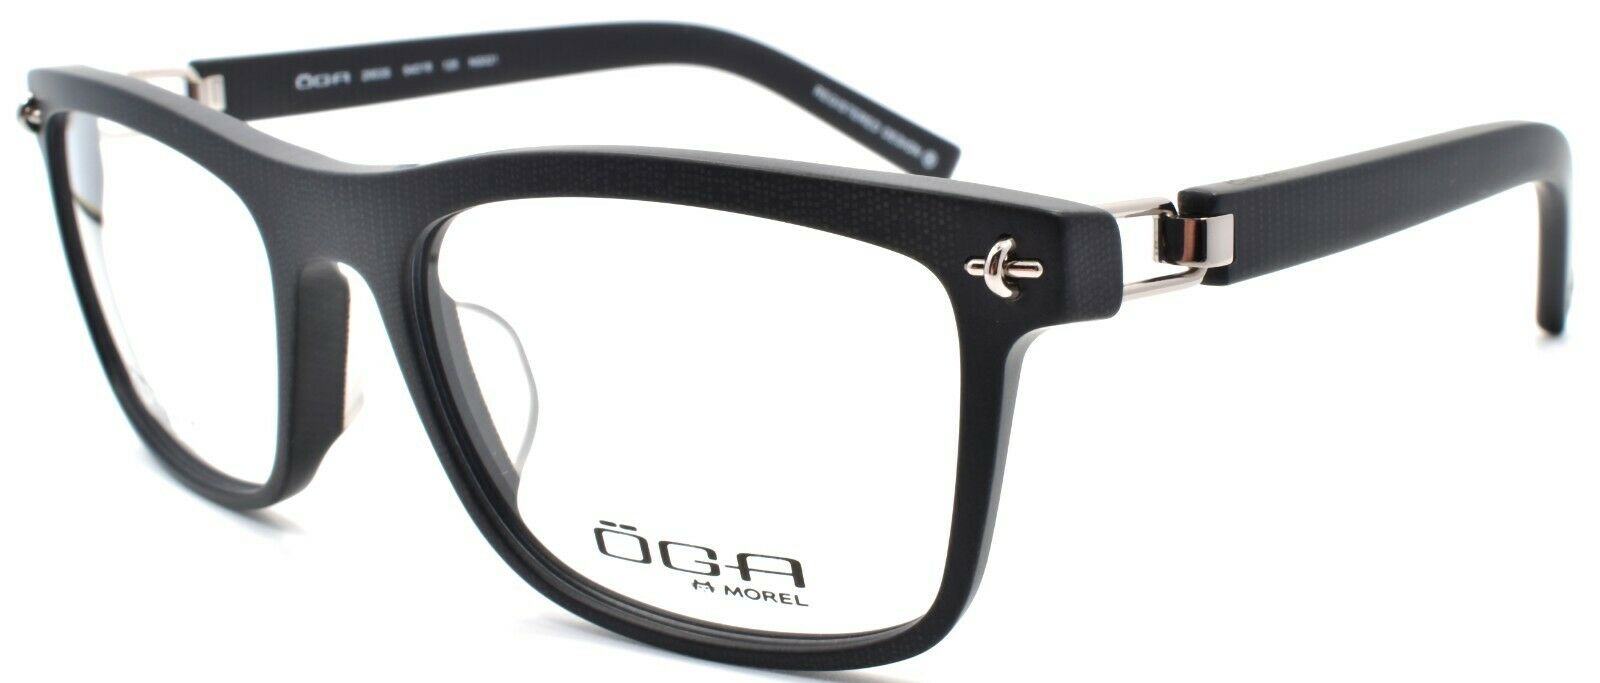 1-OGA by Morel 2953S NG021 Men's Eyeglasses Frames Asian Fit 54-18-125 Dark Grey-3604770890235-IKSpecs